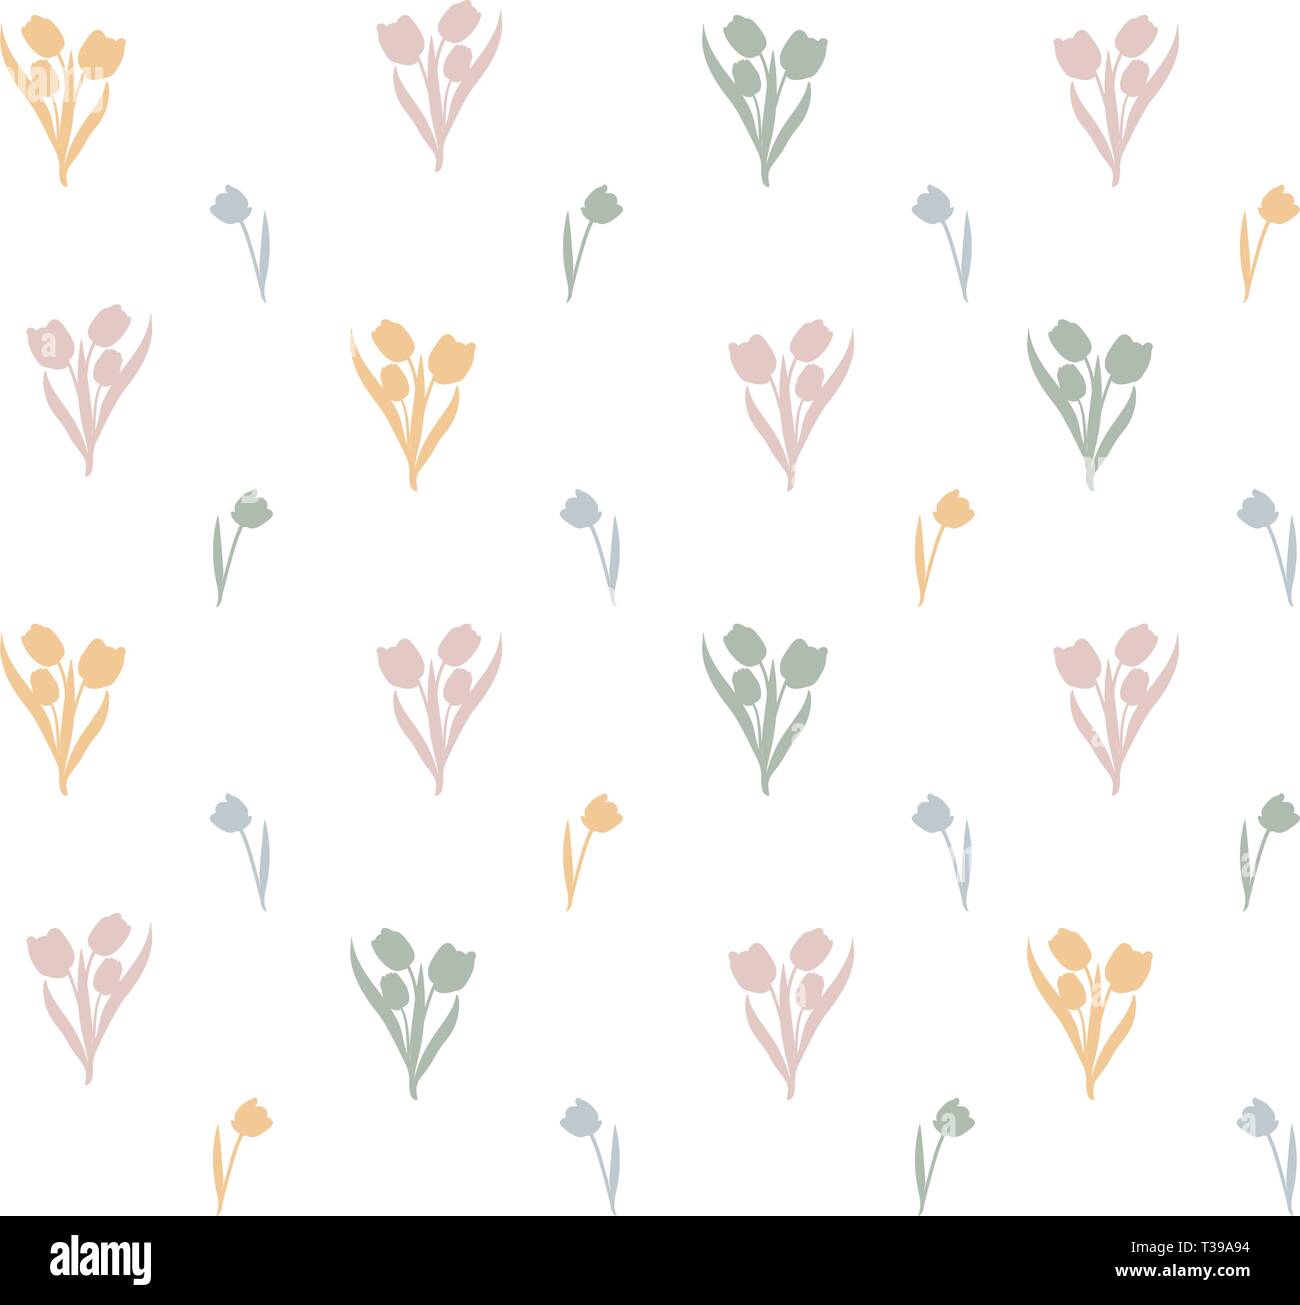 Elegante nahtlose Muster mit Tulpe Blumen, Designelemente. Florales Muster für Einladungen, Karten, Drucken, Geschenkpapier, Fertigung, Textil-, Gewebe-, Stock Vektor